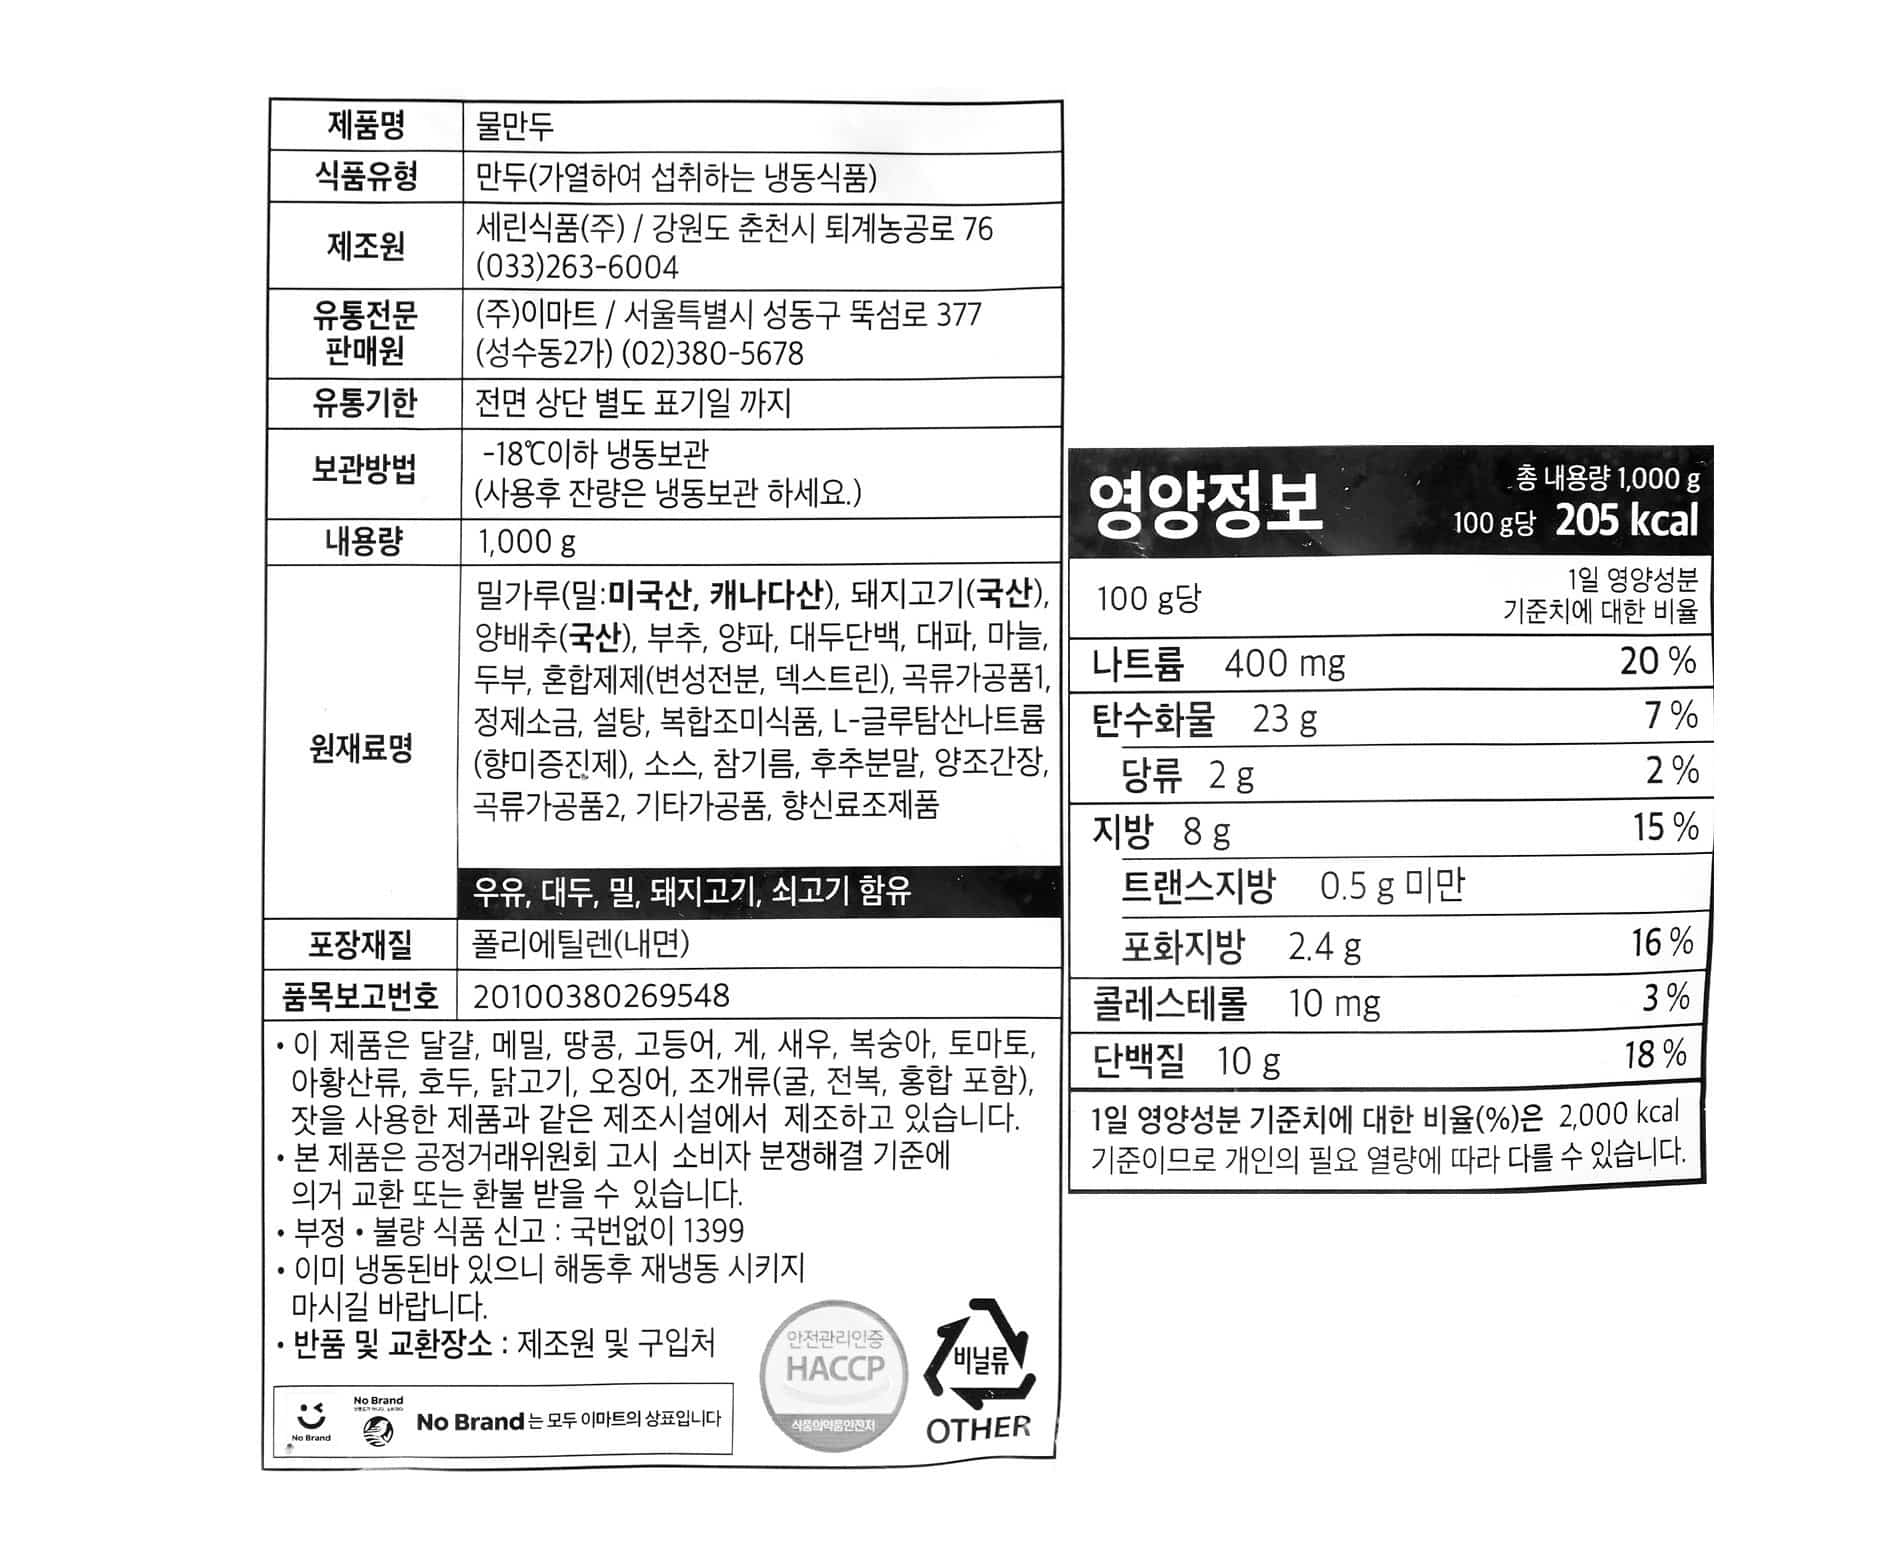 韓國食品-[노브랜드] 물만두 1kg